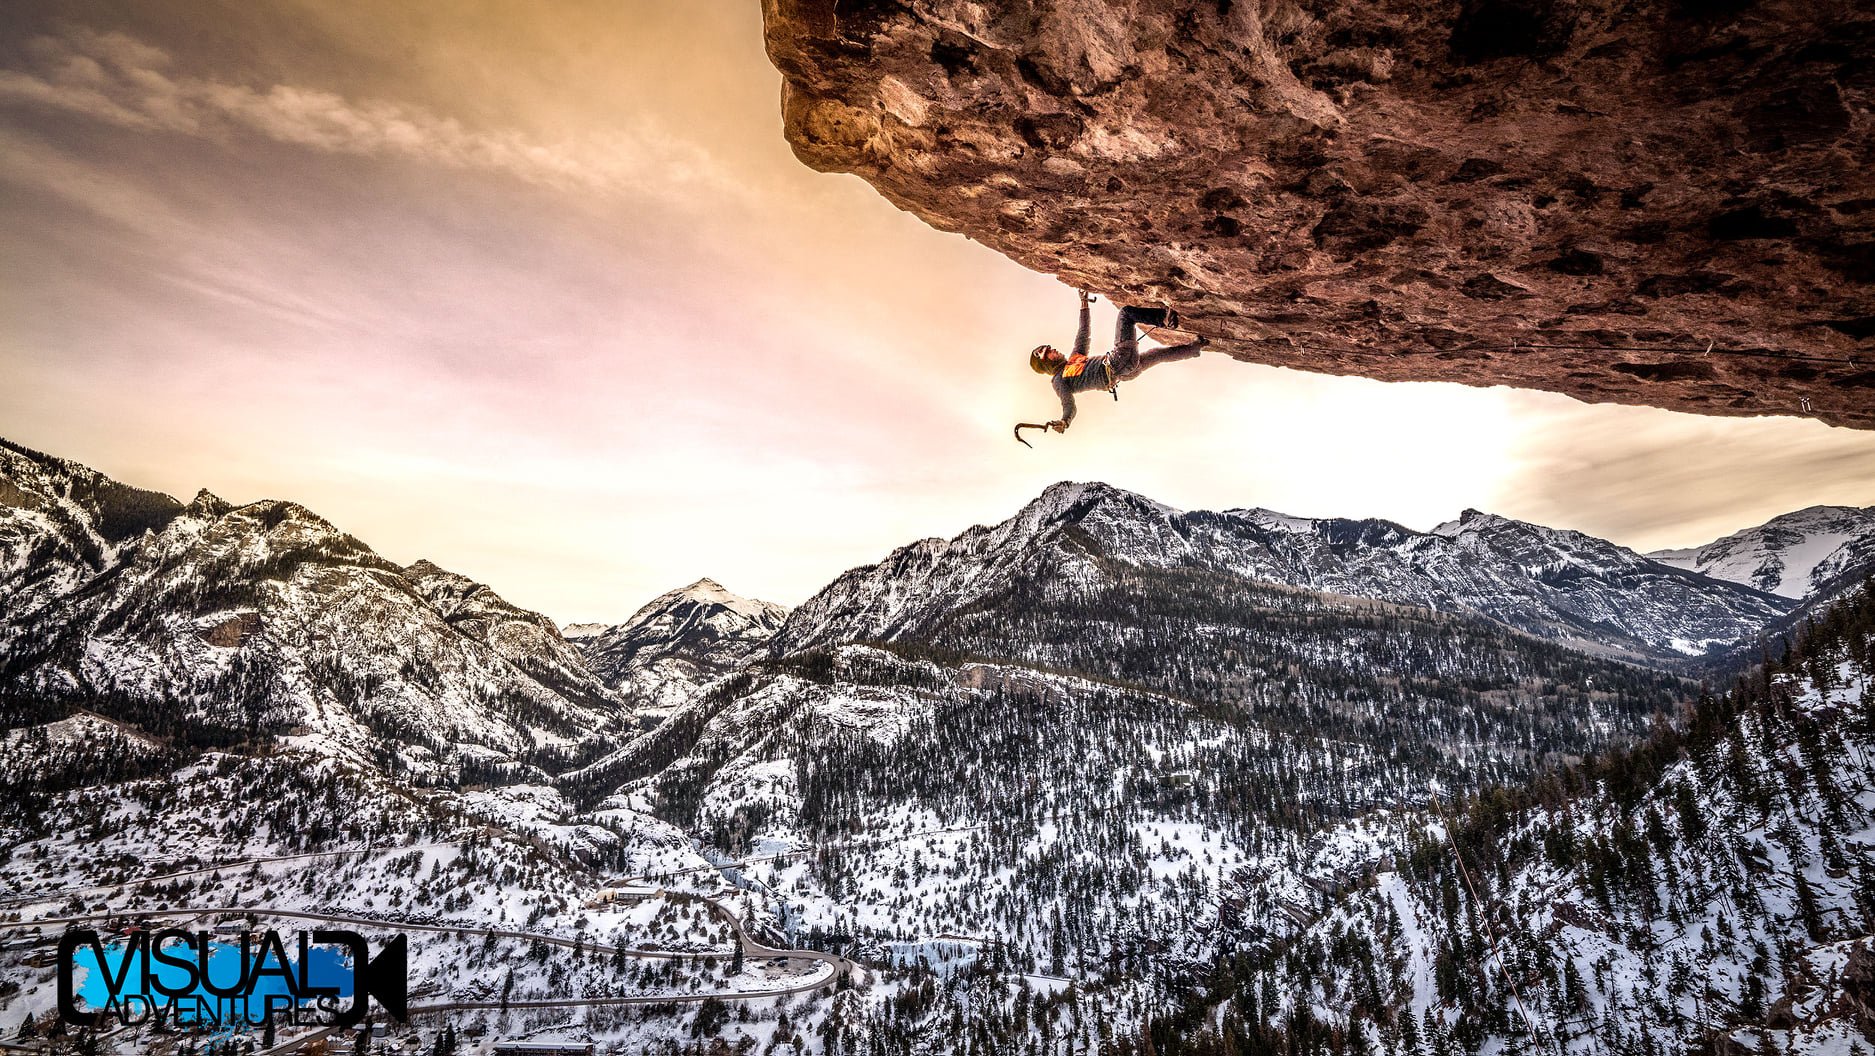 Guy ice climbing on overhang rock